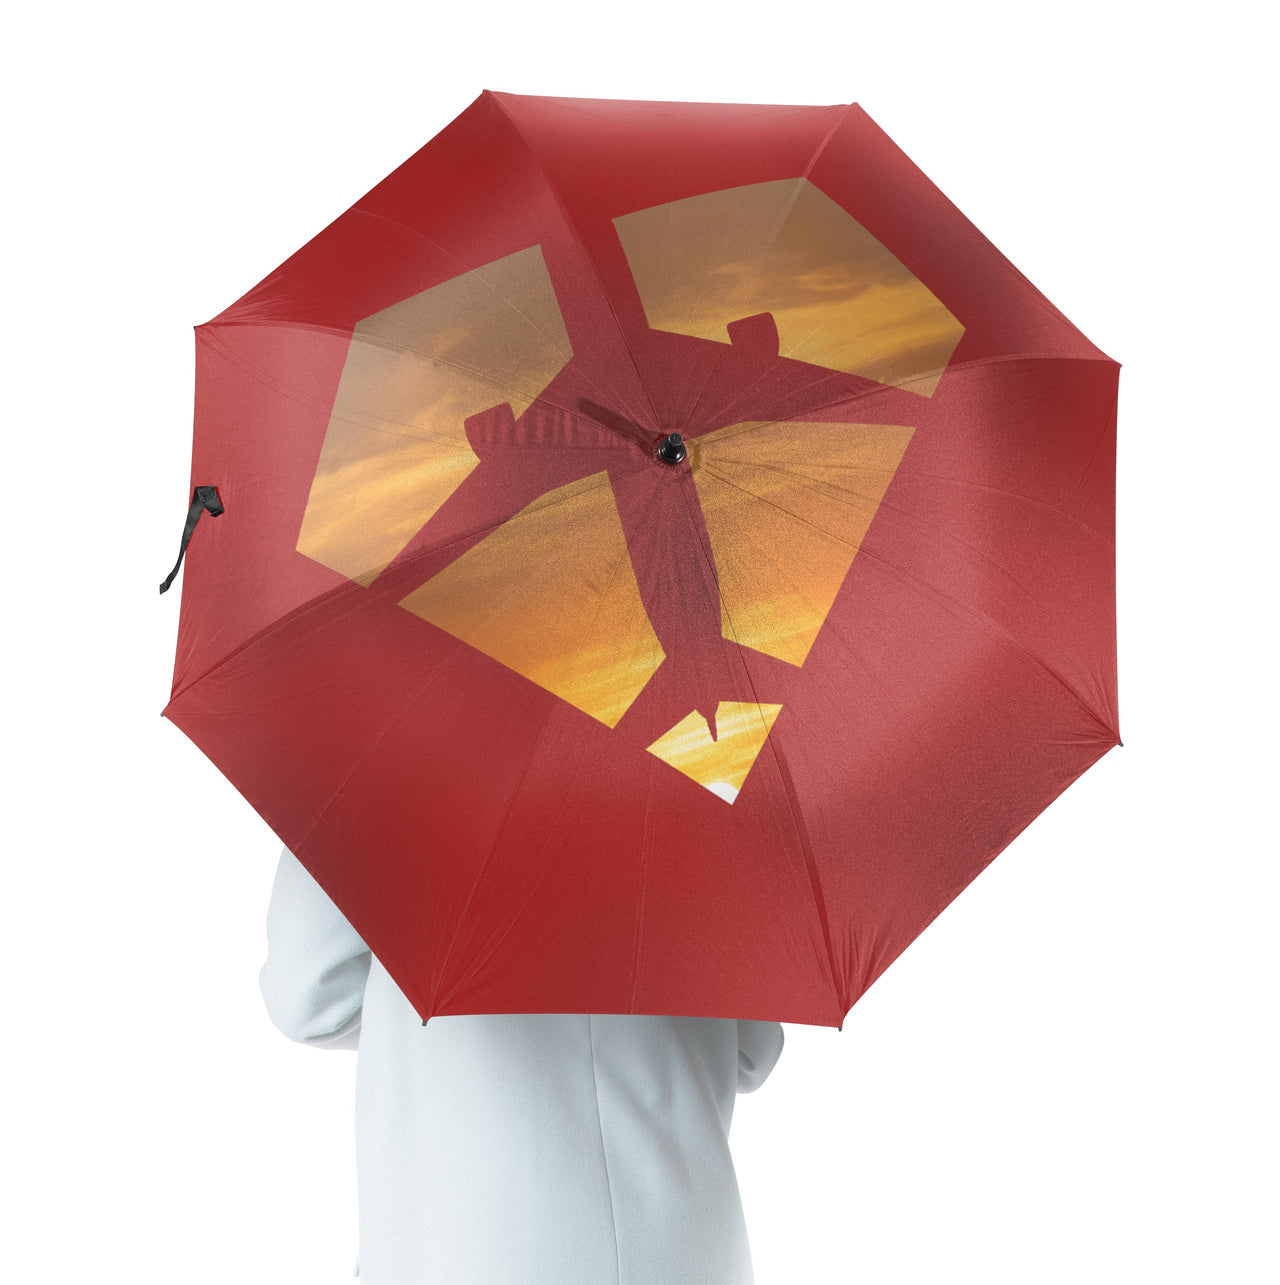 Supermen of The Skies (Sunset) Designed Umbrella